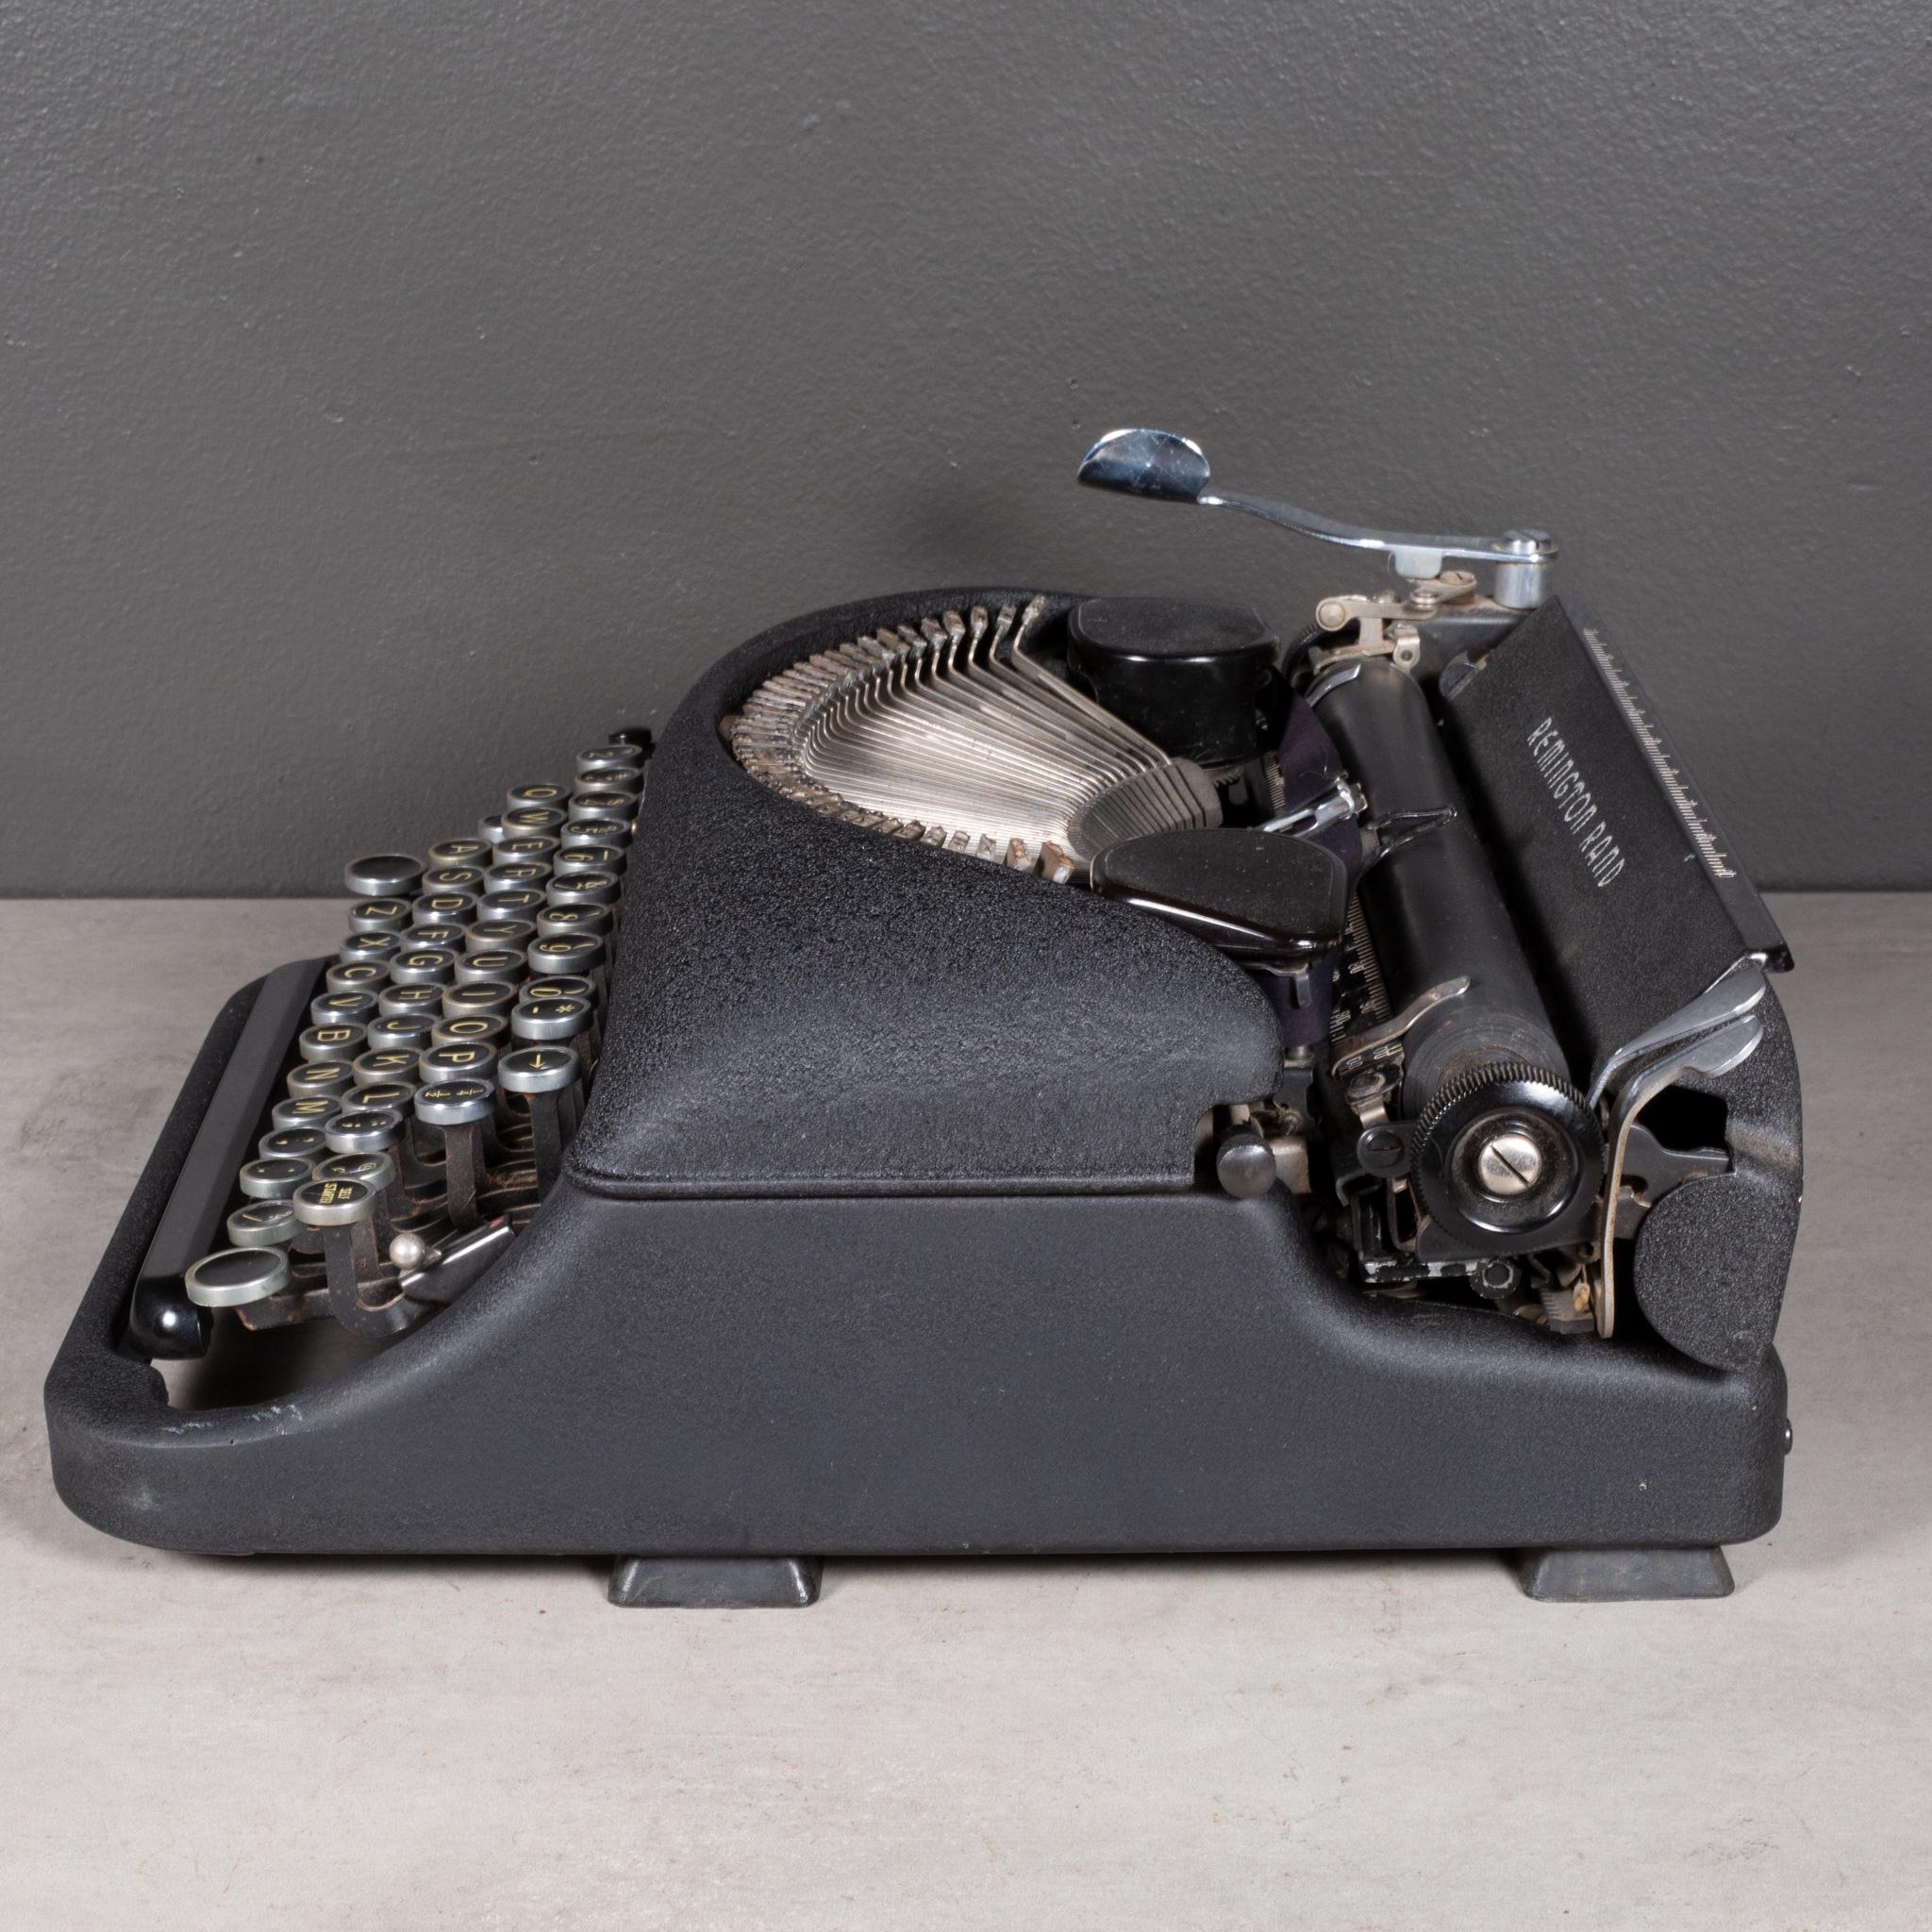 vintage remington rand typewriter